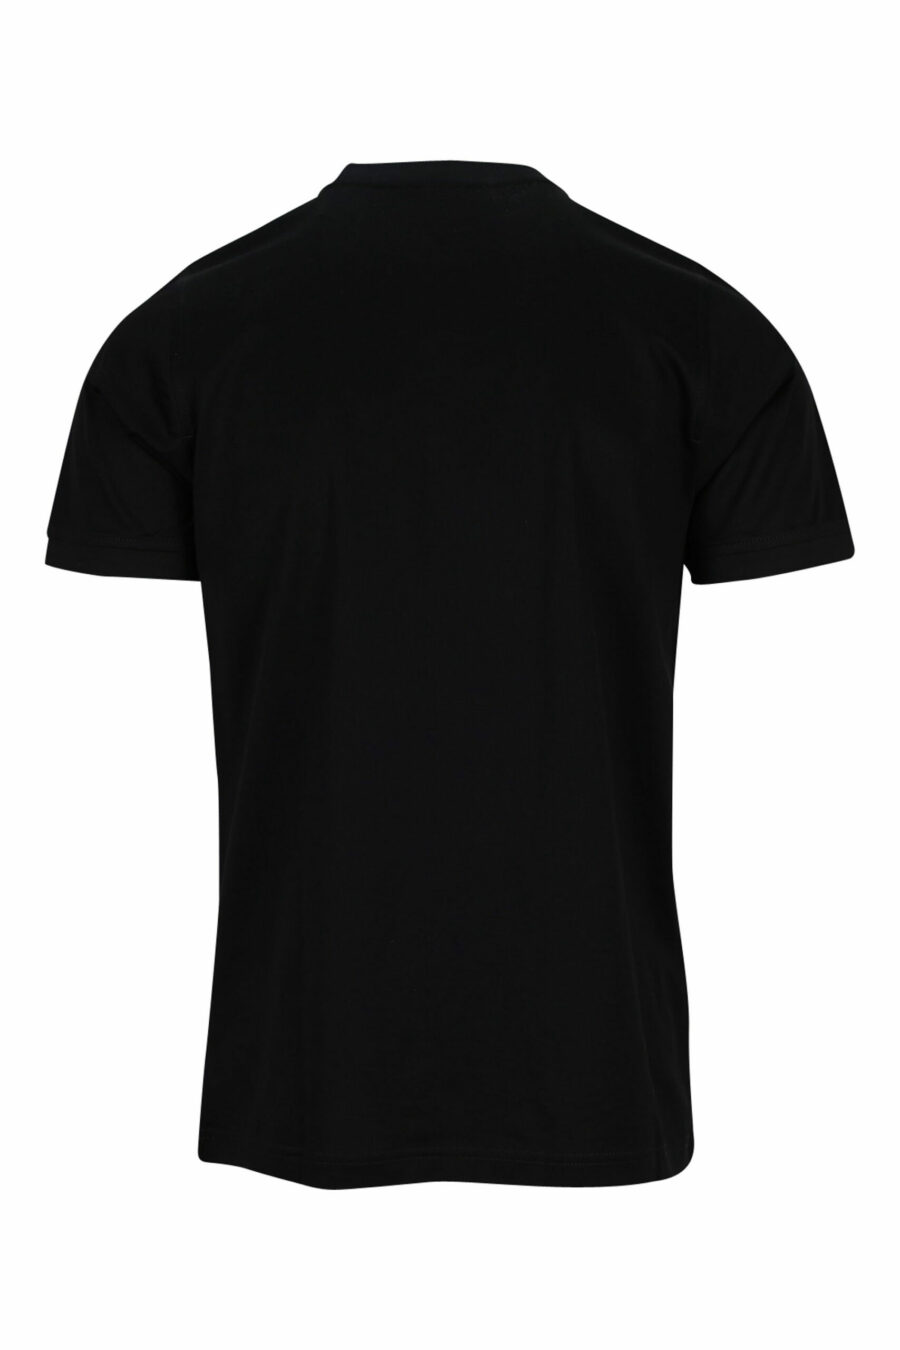 T-shirt noir avec minilogue noir - 4062226400473 1 à l'échelle